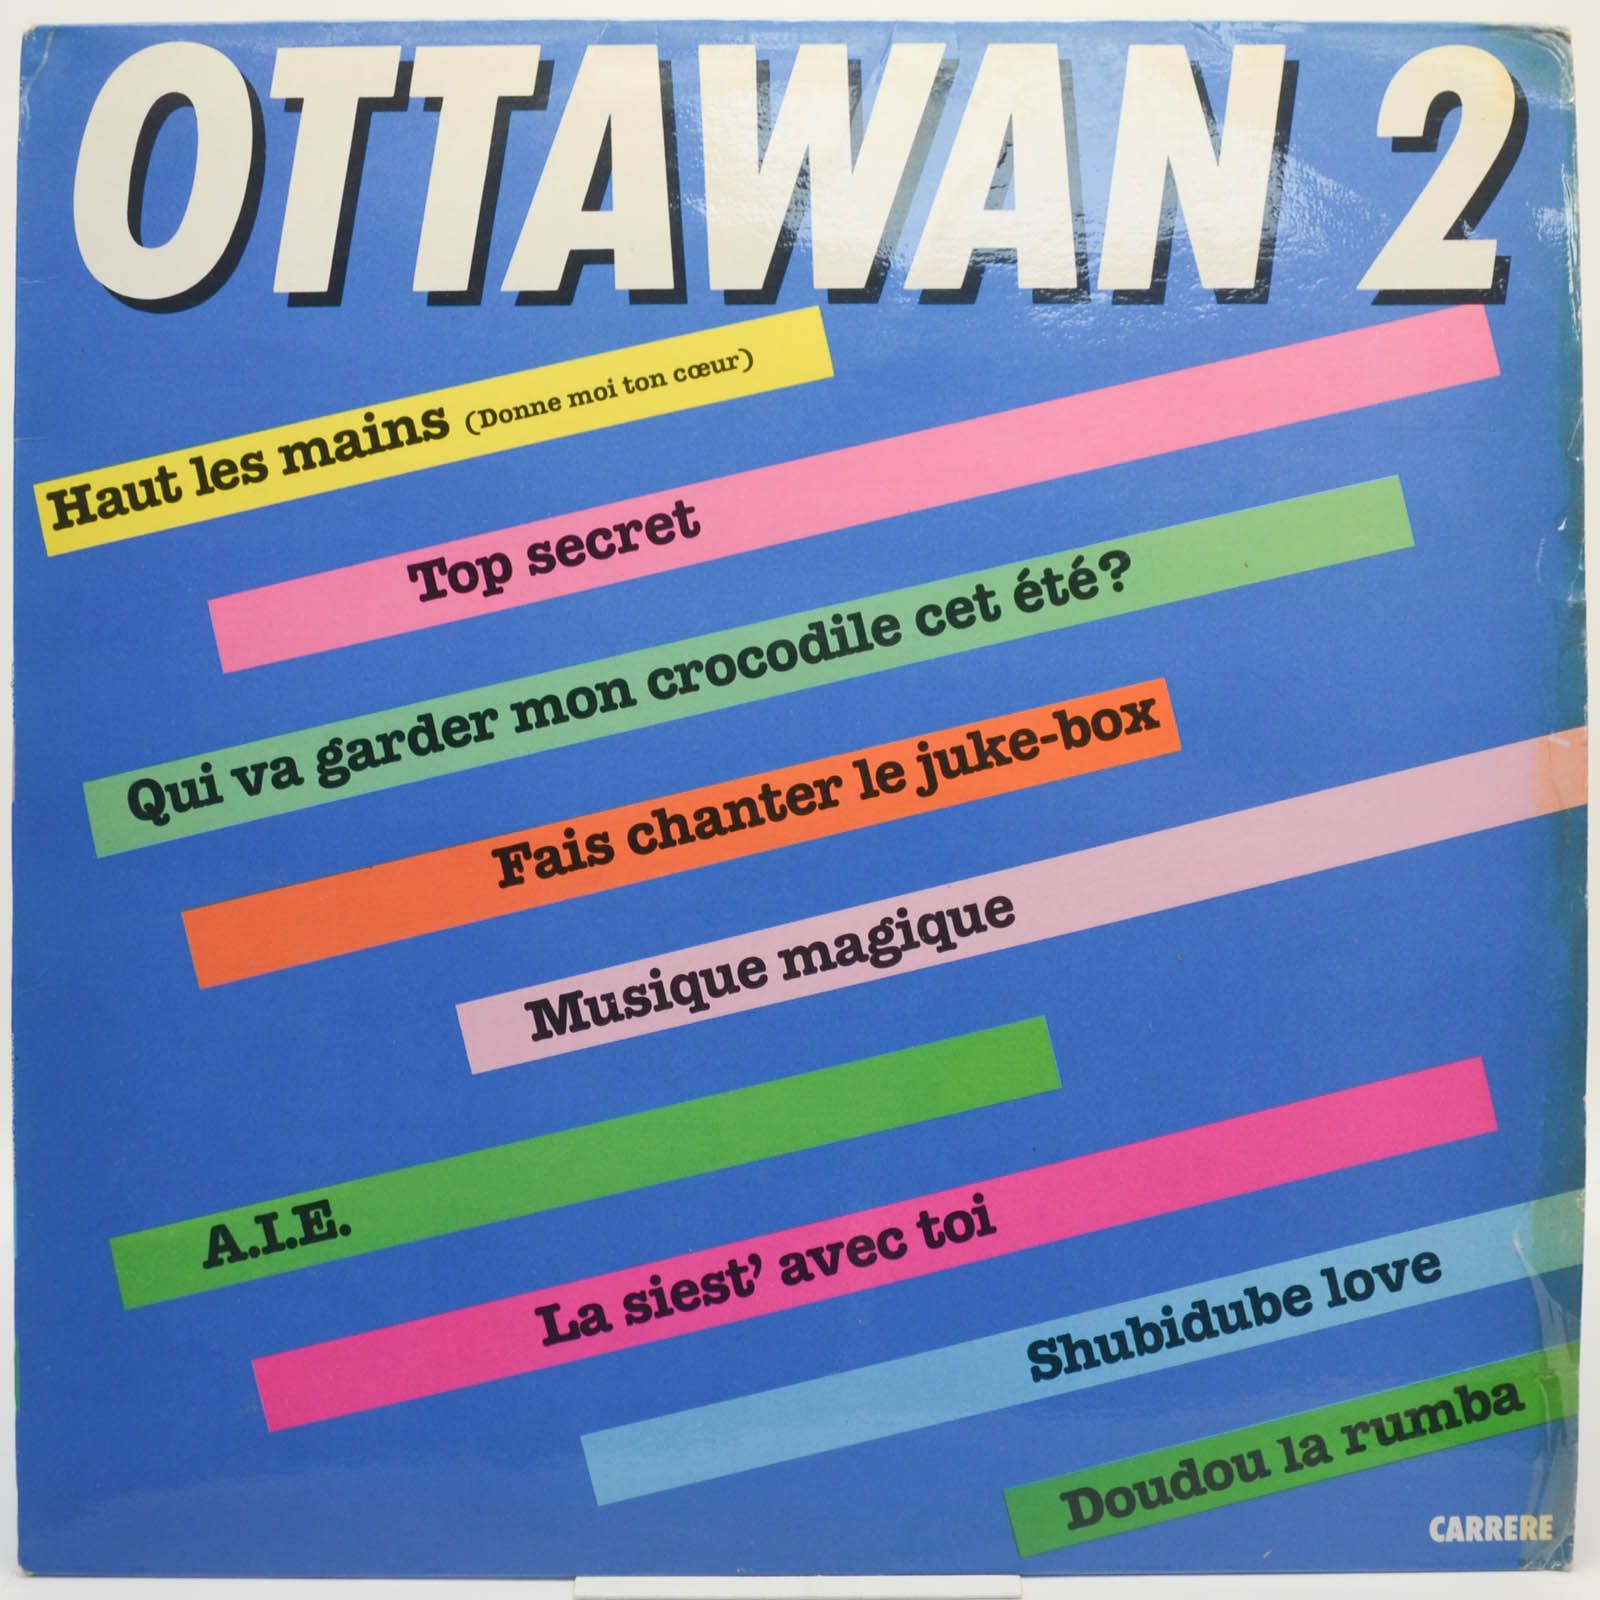 Ottawan — 2 (France), 1981